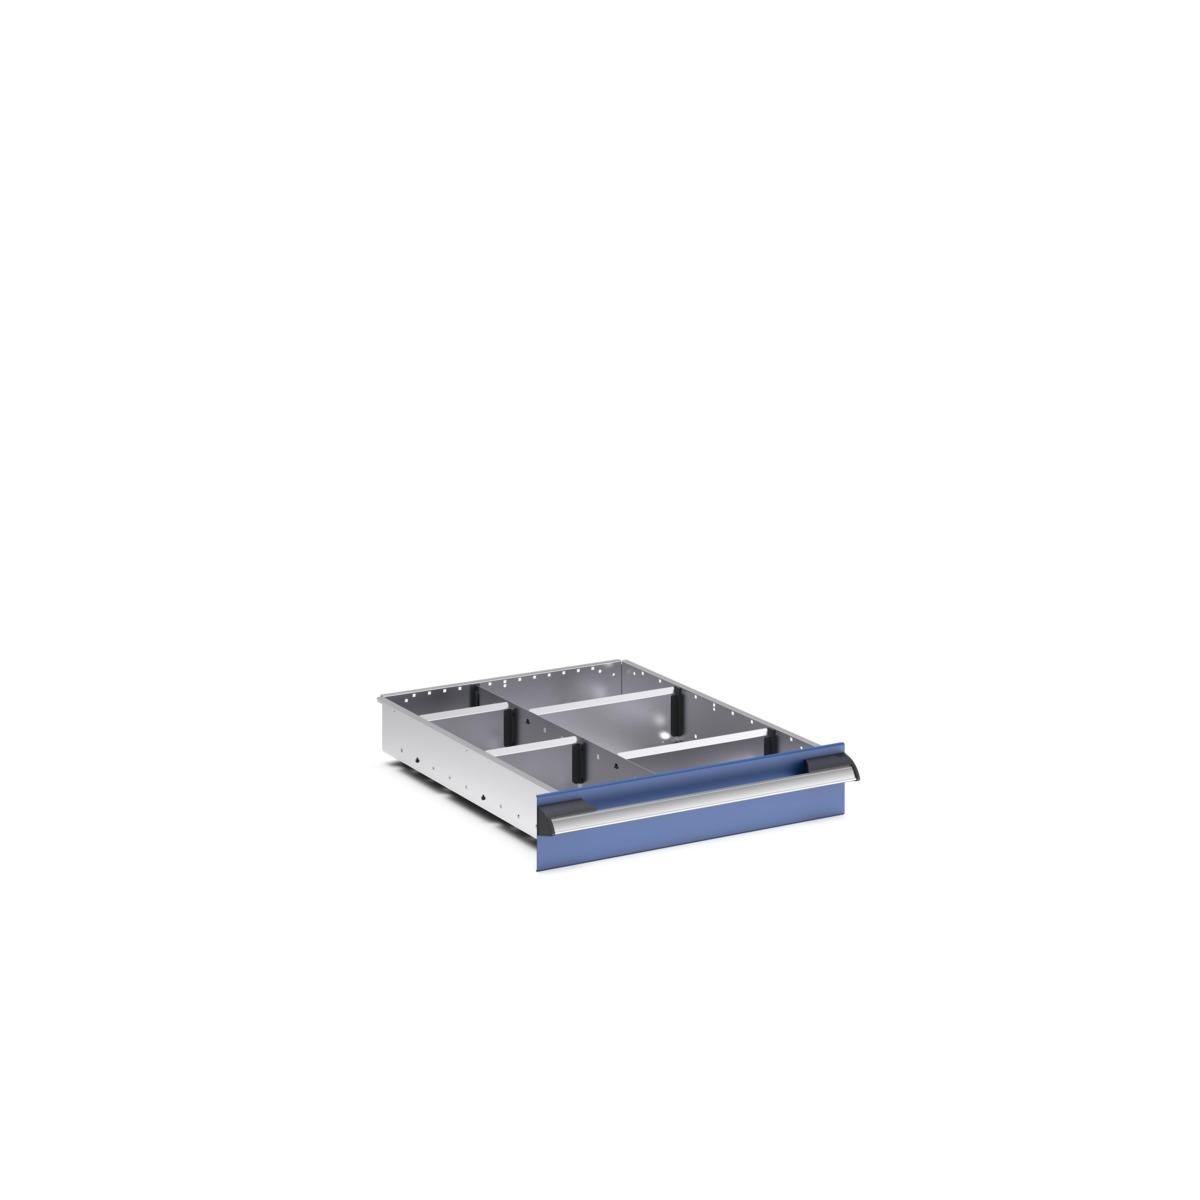 43020630.51 - cubio adjustable divider kit